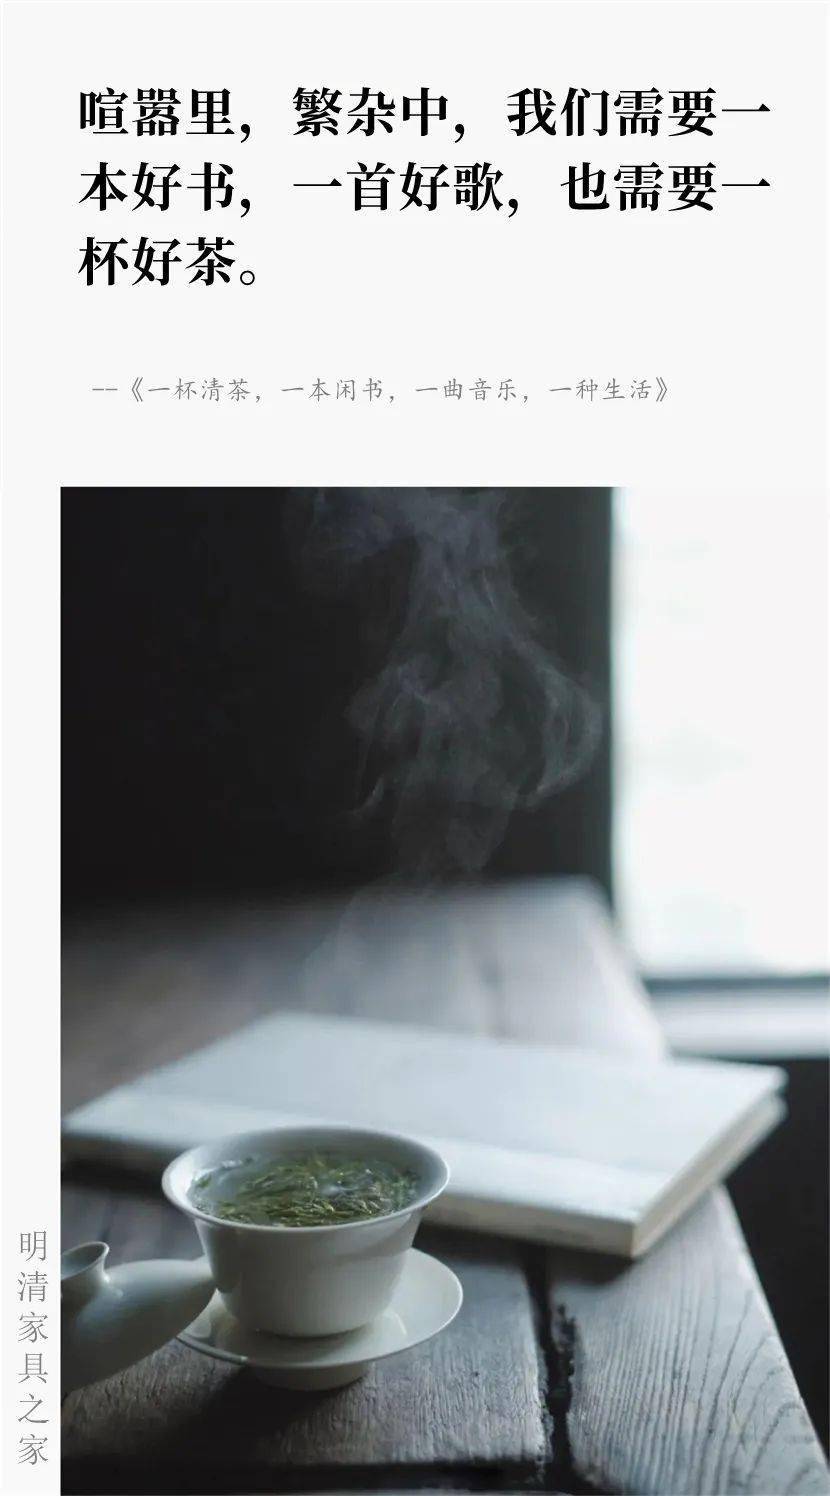 一杯热茶一本书的图片图片